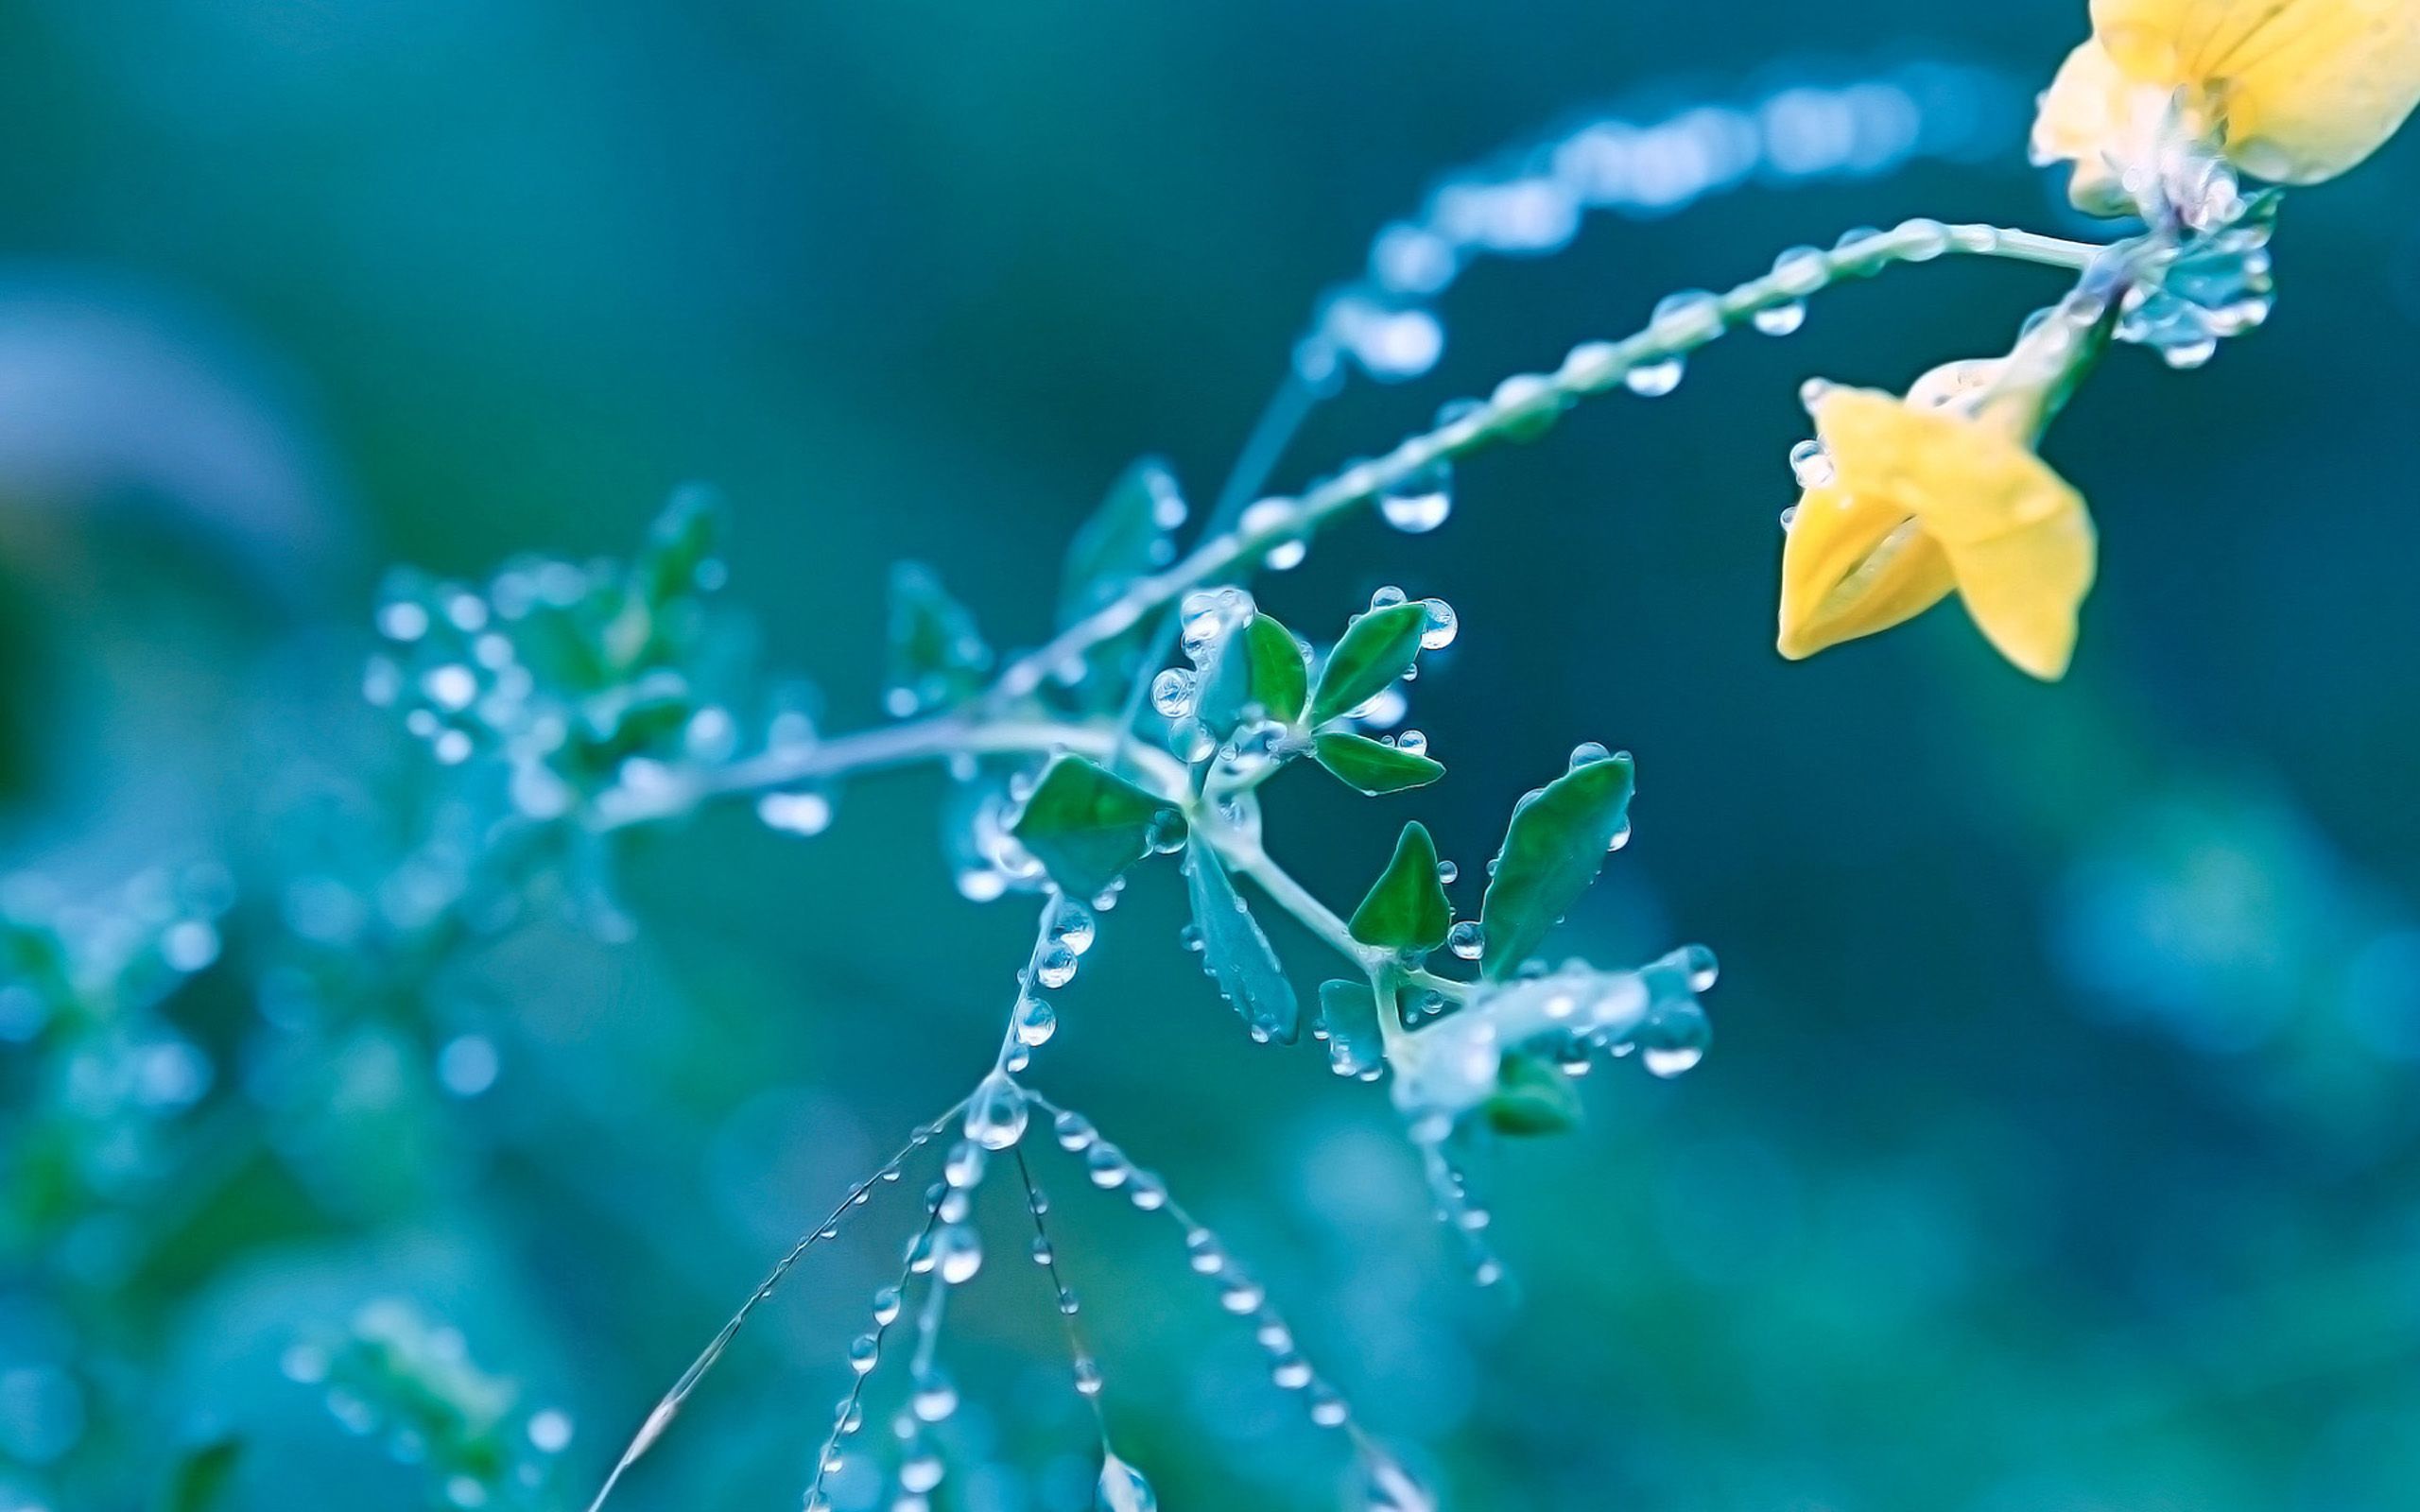 Drop Of Water In Yellow Spring Flowers Wallpaper For Computer Desktop